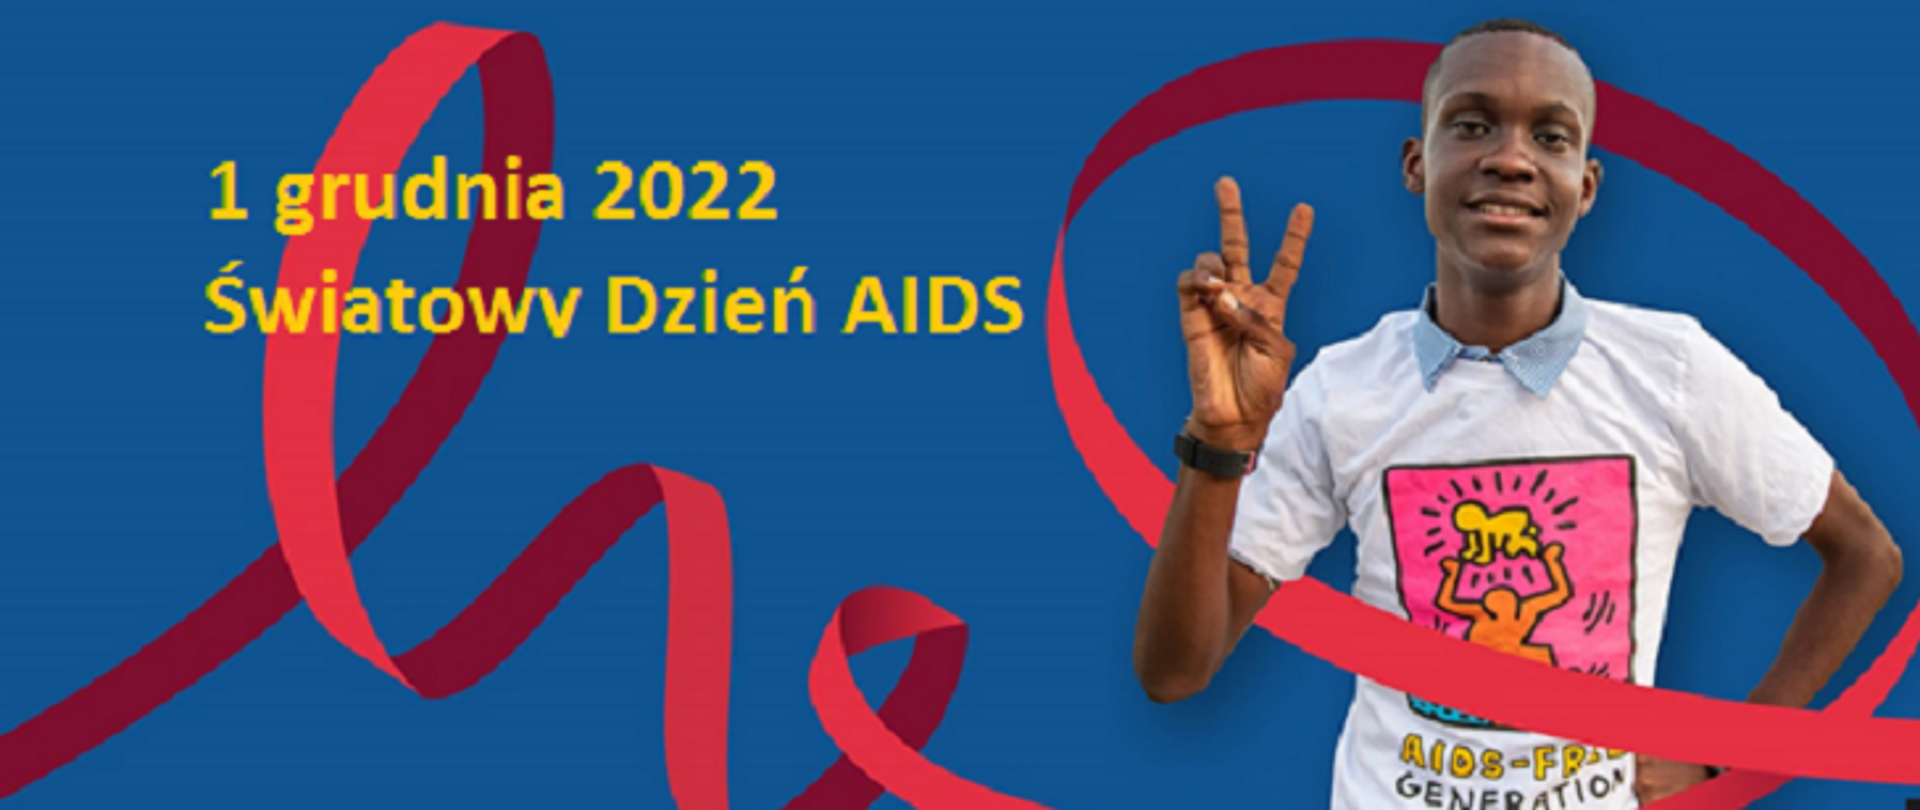 Zdjęcie przedstawia afroamerykanina w białej koszulce z hasłem kampanii w języku angielskim, którego oplata różowa wstęga symbol walki z AIDS, całość jest na niebieskim tle, hasło: "1 grudnia 2022 Światowy Dzień AIDS" napisane jest żółtymi literami w prawym górnym rogu